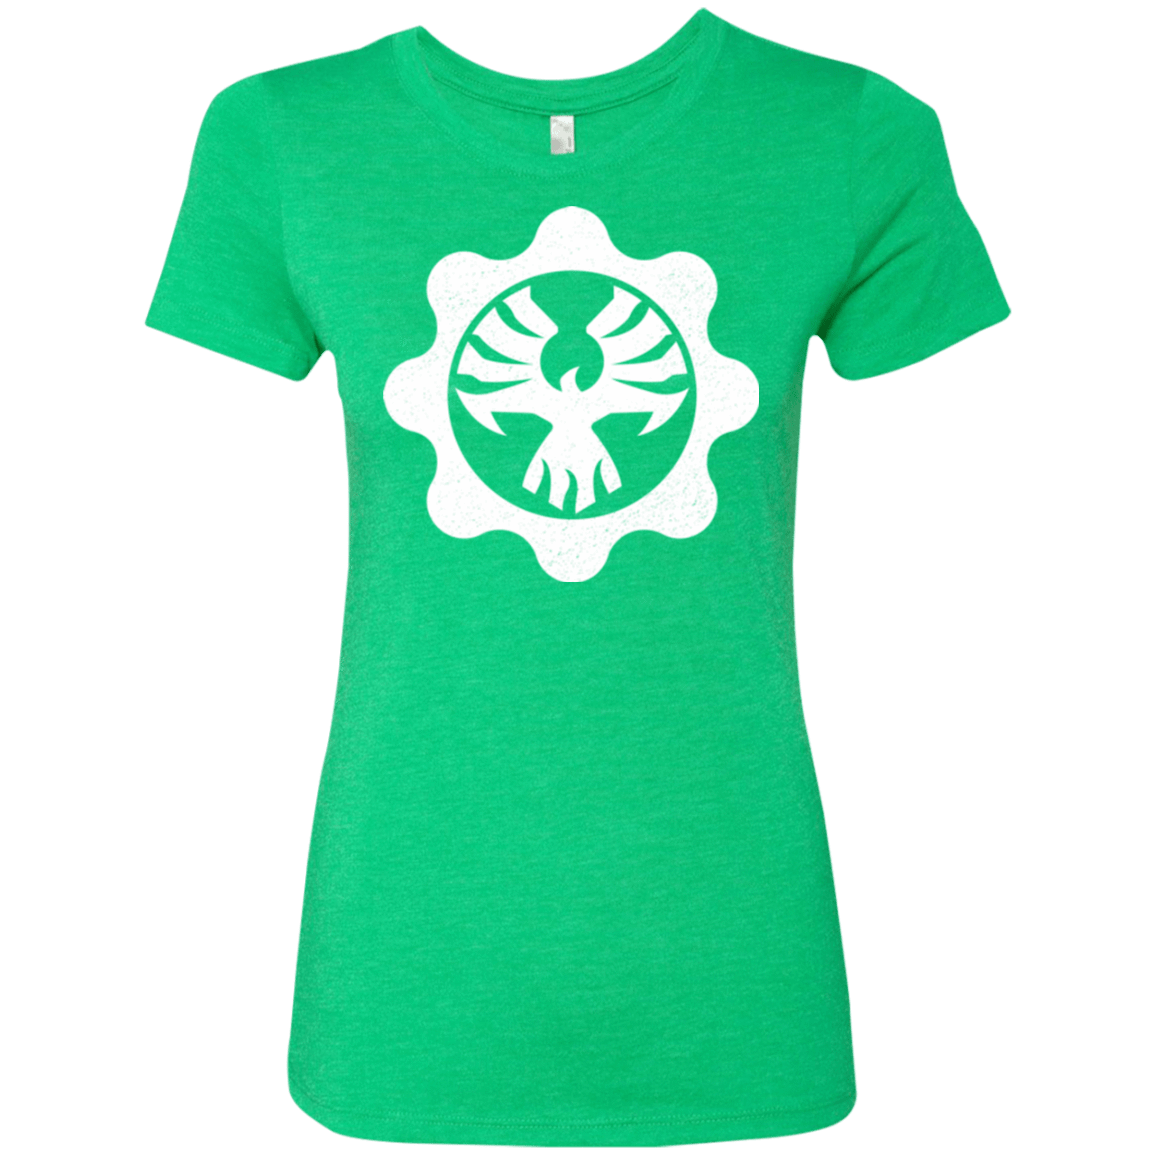 T-Shirts Envy / Small Gears of War 4 Cog Emblem Women's Triblend T-Shirt